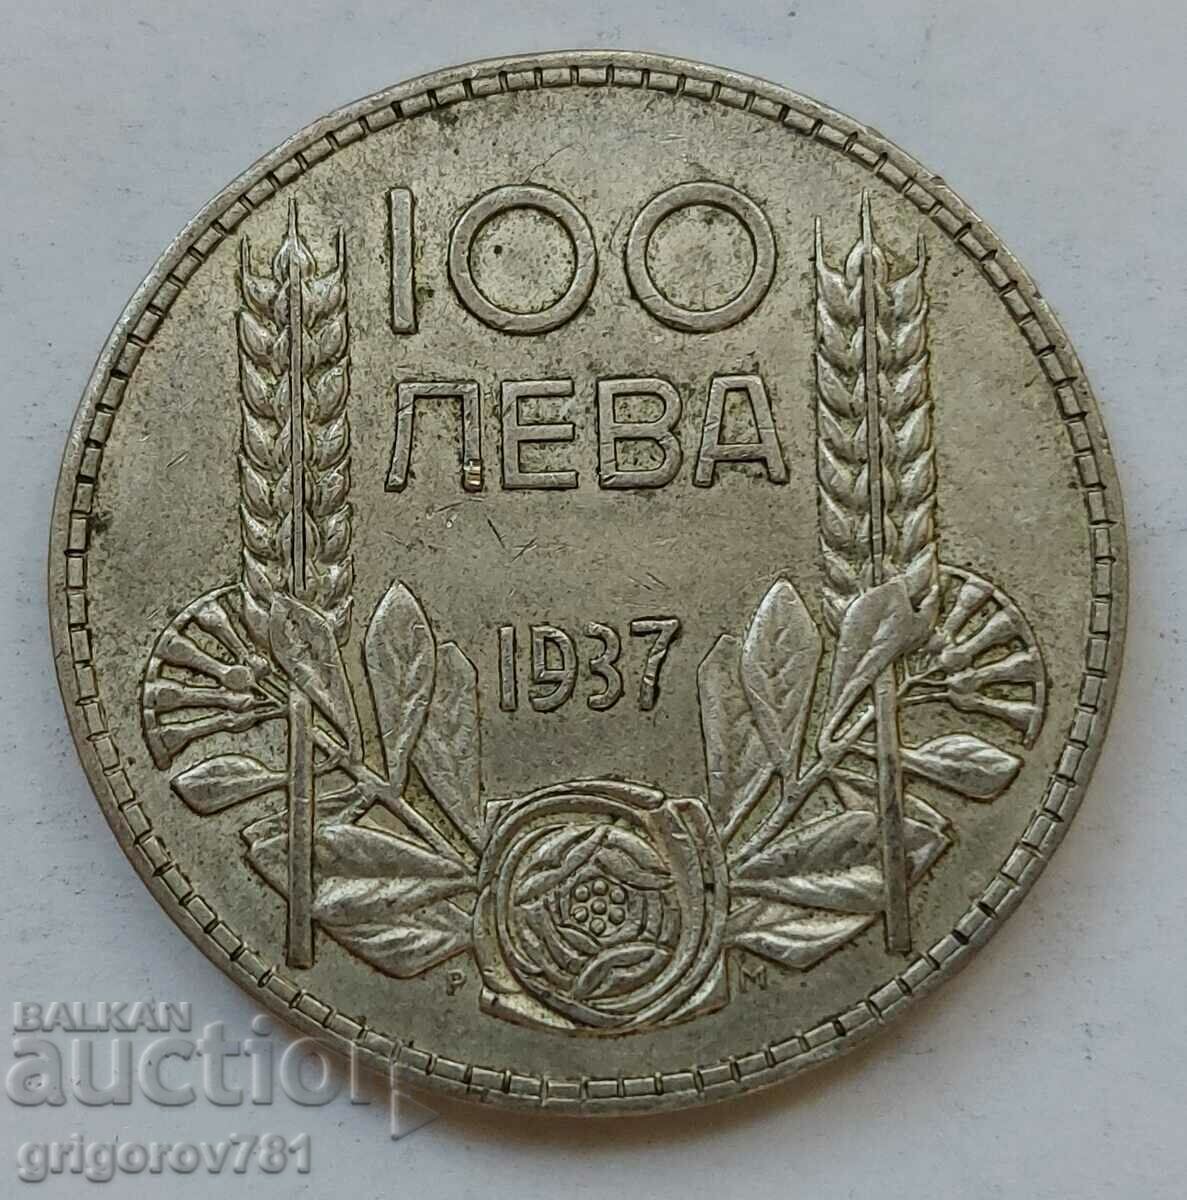 Ασήμι 100 λέβα Βουλγαρία 1937 - ασημένιο νόμισμα #138